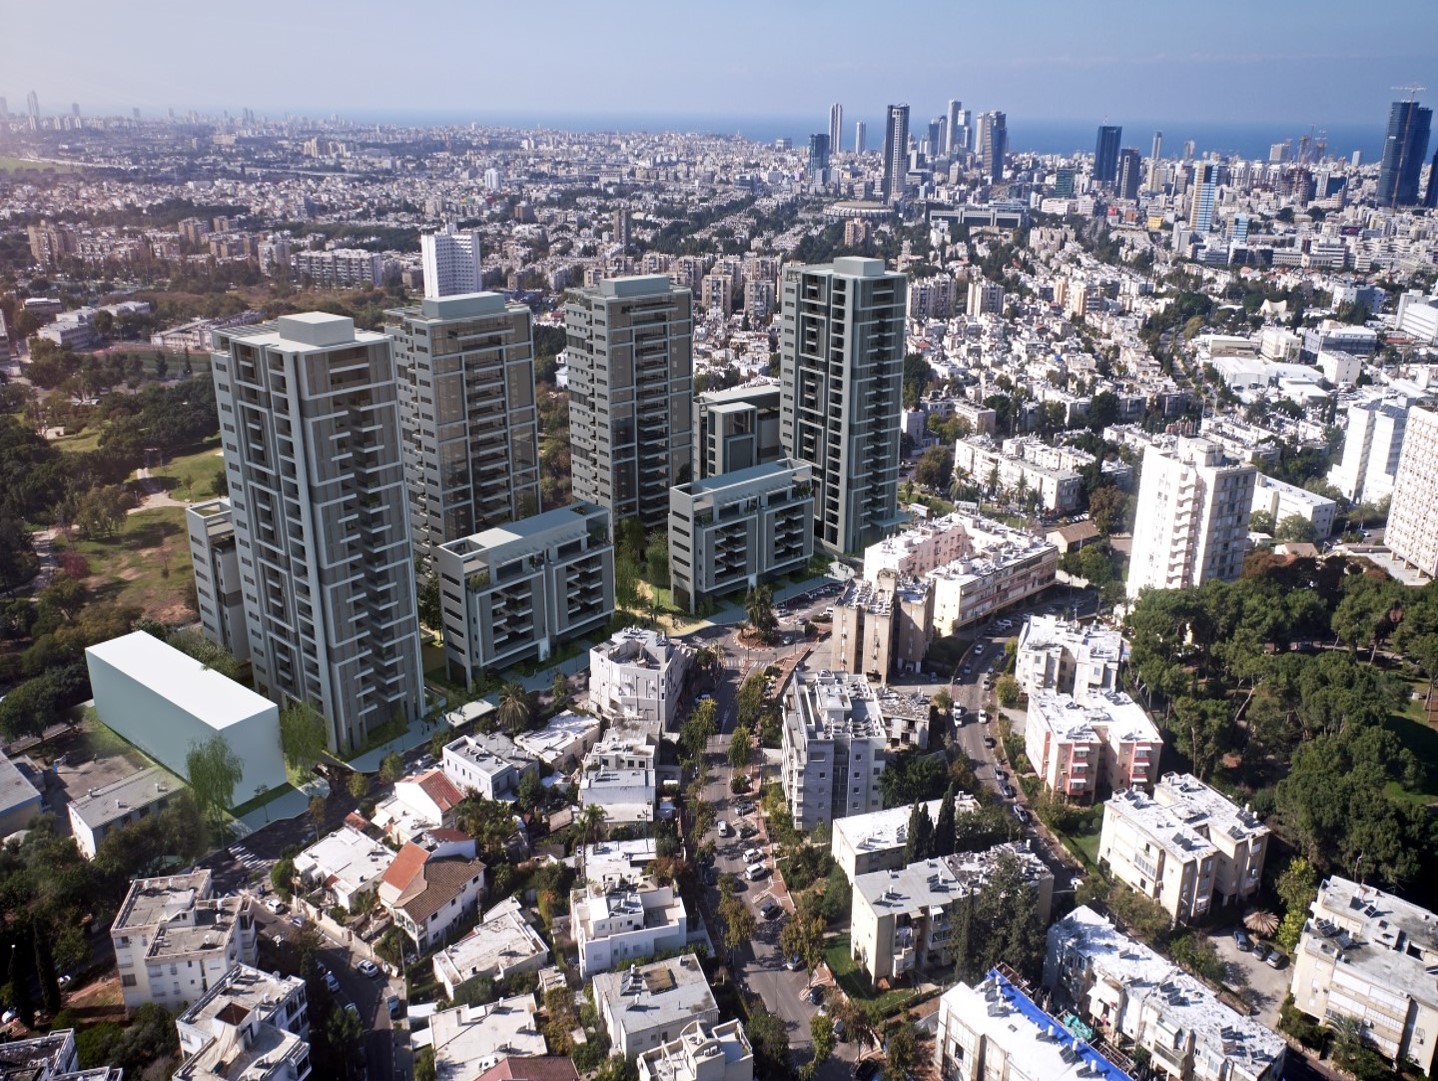 חברת אחים דוניץ דיווחה כי עיריית תל אביב החליטה לקדם את תכנית הבינוי פינוי בדרך השלום